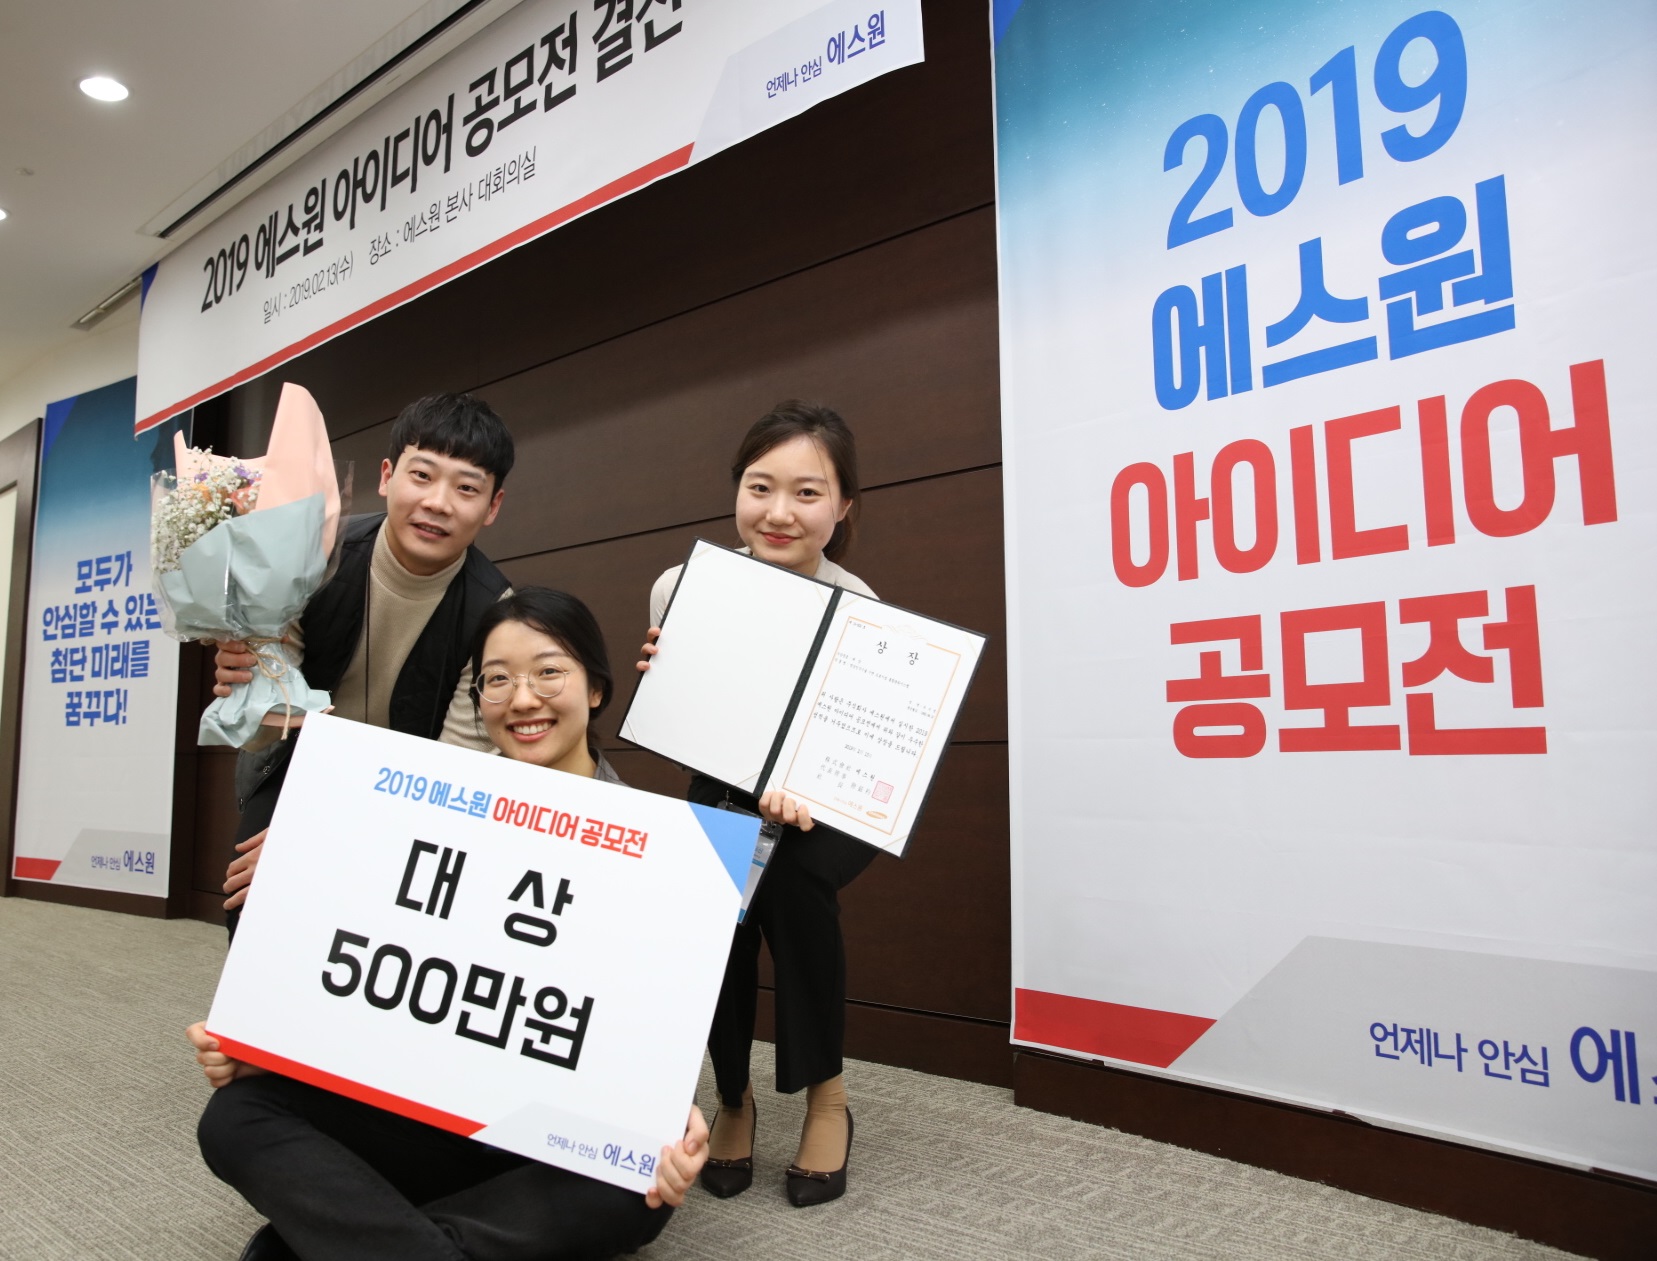 에스원이 개최한 ‘2019 에스원 아이디어 공모전’에서 김효신(왼쪽부터), 장은경, 유수정씨 팀이 대상을 수상했다.  에스원 제공